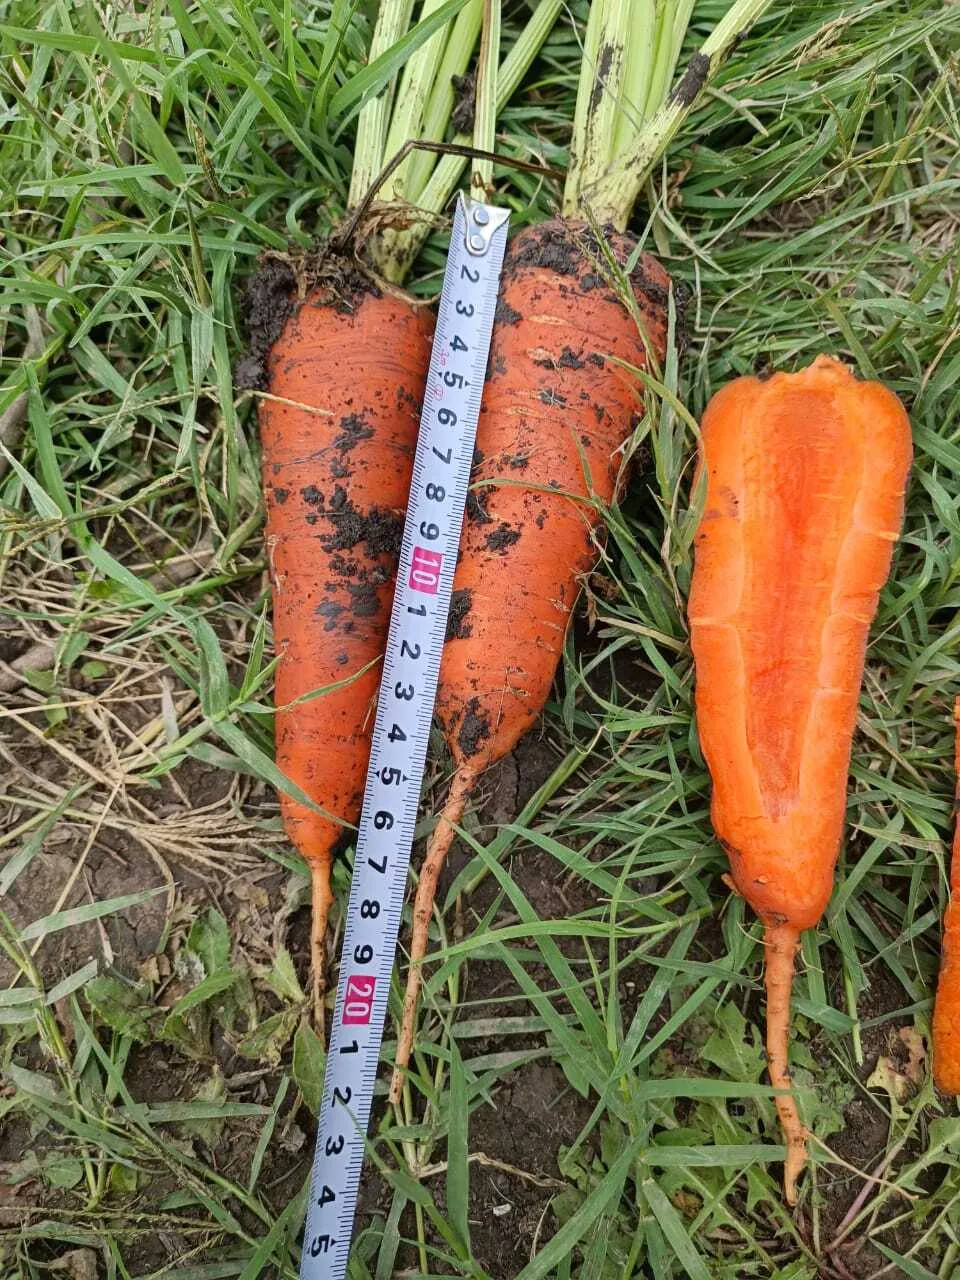 морковь грязная  в Краснодаре и Краснодарском крае